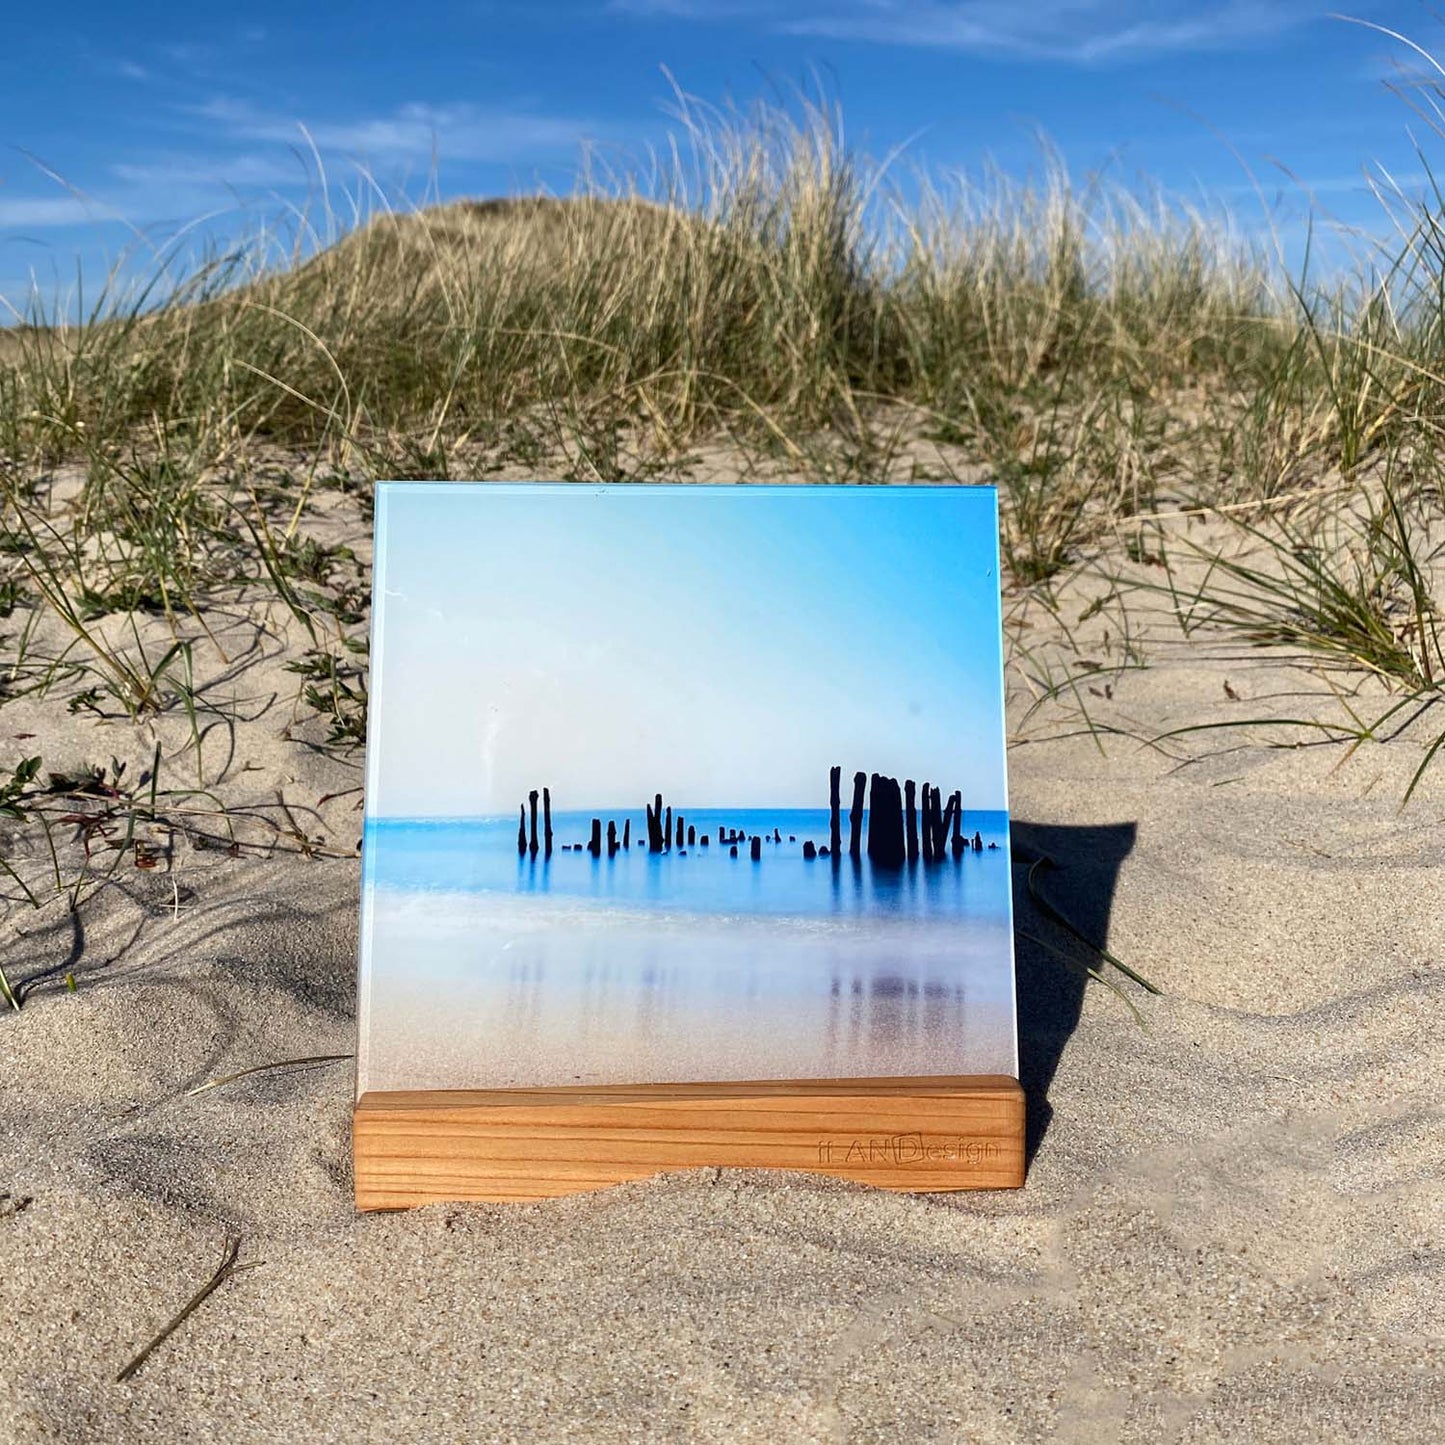 Acrylbild mit Buhnenresten im Meer steht in einem Holzbilderhalter in den Sylter Dünen.